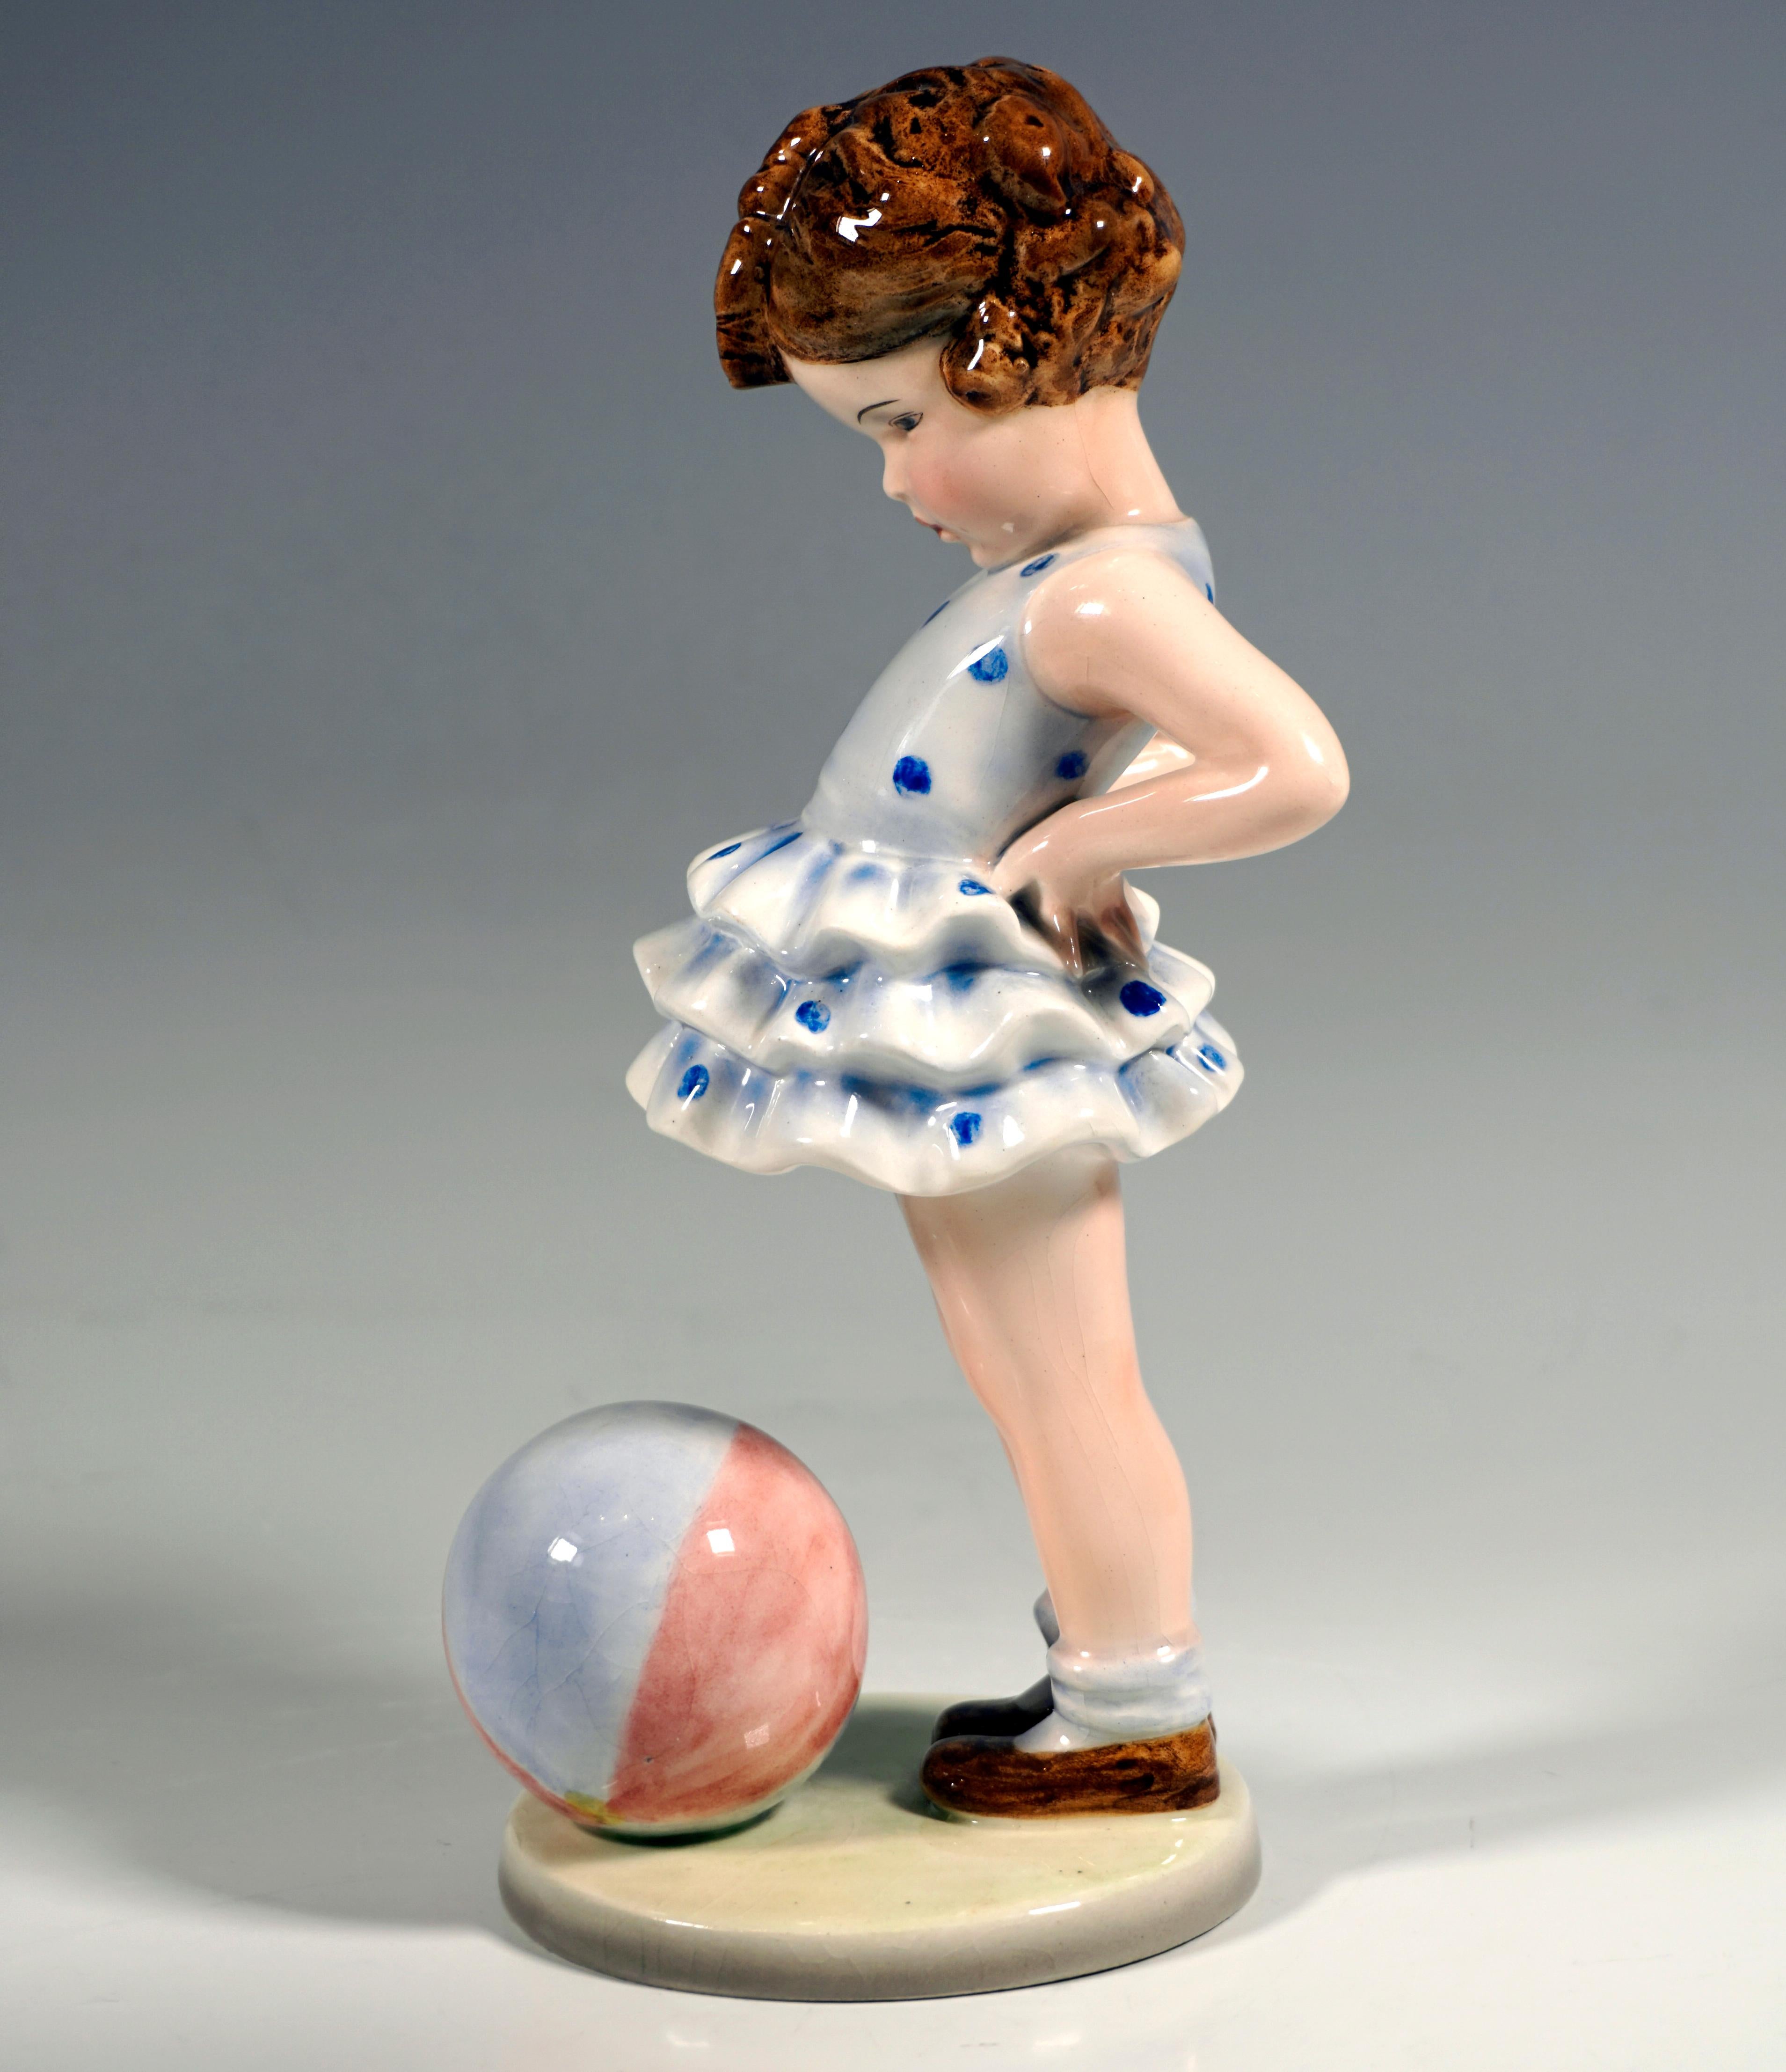 Austrian Goldscheider Vienna Figurine 'Joujou' Girl with Ball by Germaine Bouret, 1938 For Sale